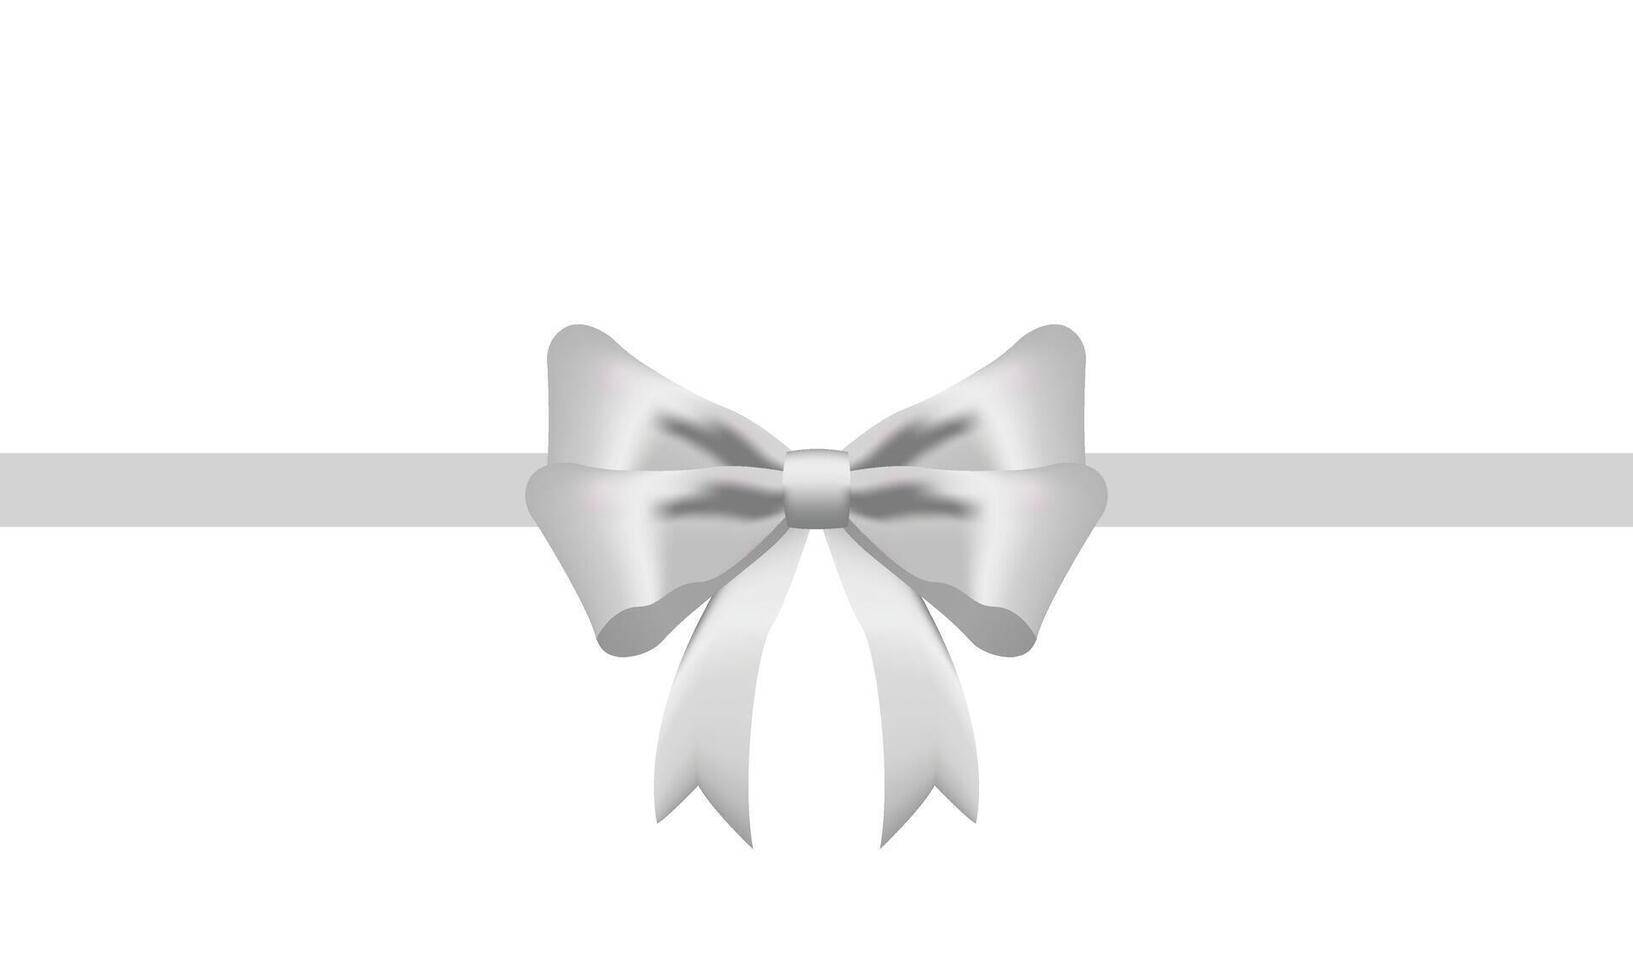 blanc ruban arc réaliste brillant satin avec ombre longue horizontal ruban pour décorer votre mariage invitation carte ,salutation carte ou cadeau des boites vecteur eps10 isolé sur blanc Contexte.